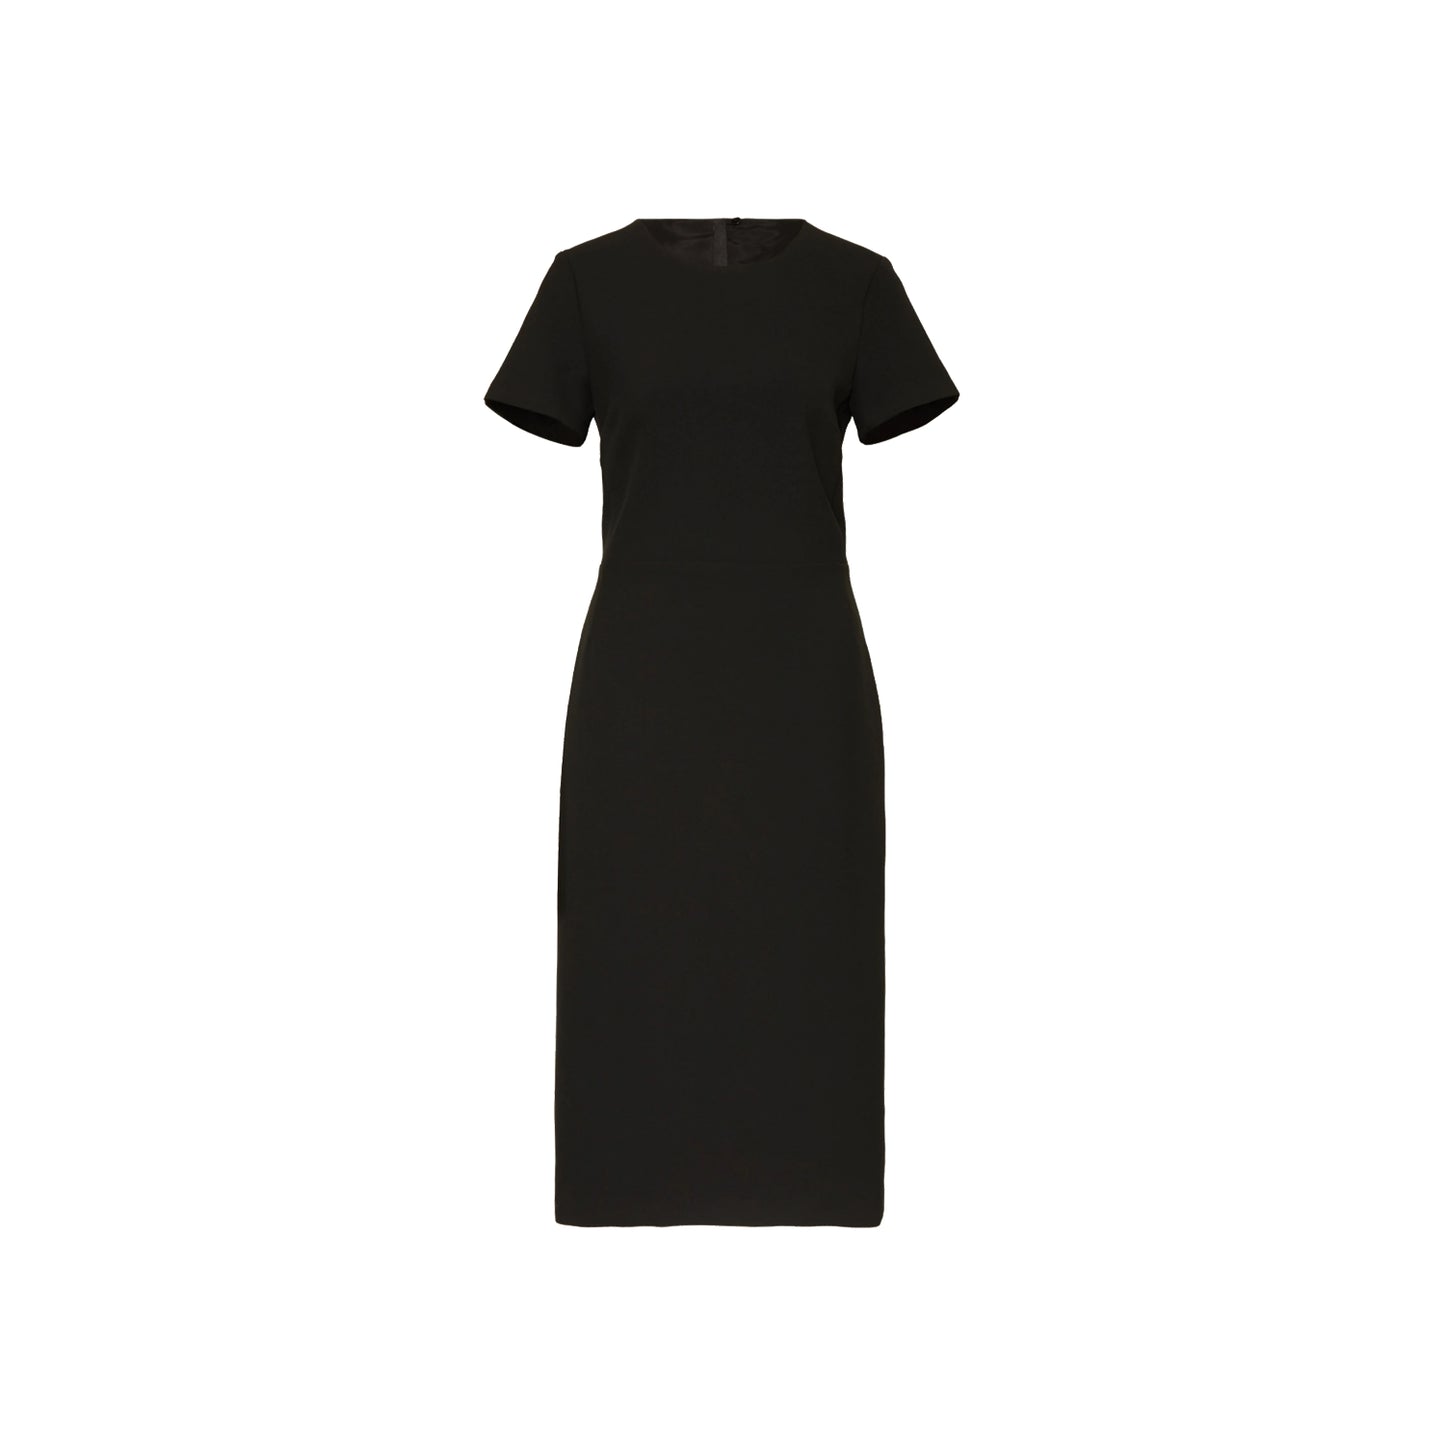 NVSCO Kleid Colette in schwarz. Schmal geschnittenes Etuikleid in kompakter Techno Viskose Qualität von NVSCO 2107 online kaufen. Designer Kleid mit dekorativem Reißverschluss in gold am Rücken aus der neuen NVSCO 2107 Kollektion.